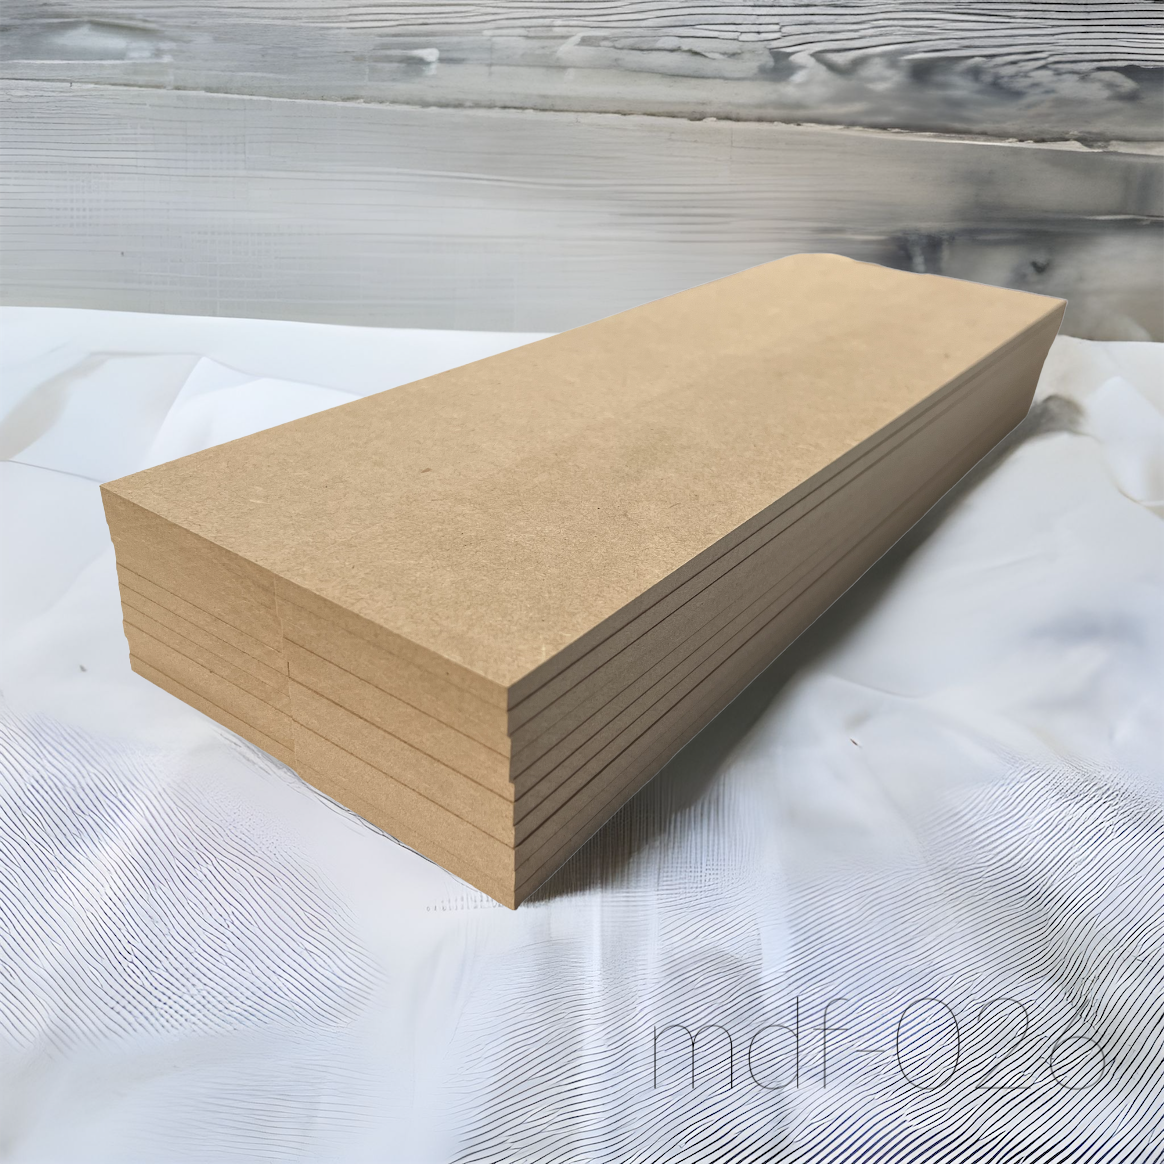 木材 MDF材 12mm厚 900mm×1800mm (3×6・サブロク) 1枚 MDFボード MDF板 直線カットオーダー対応(10回無料) 板 diy 材料 (事業所向け) - 6